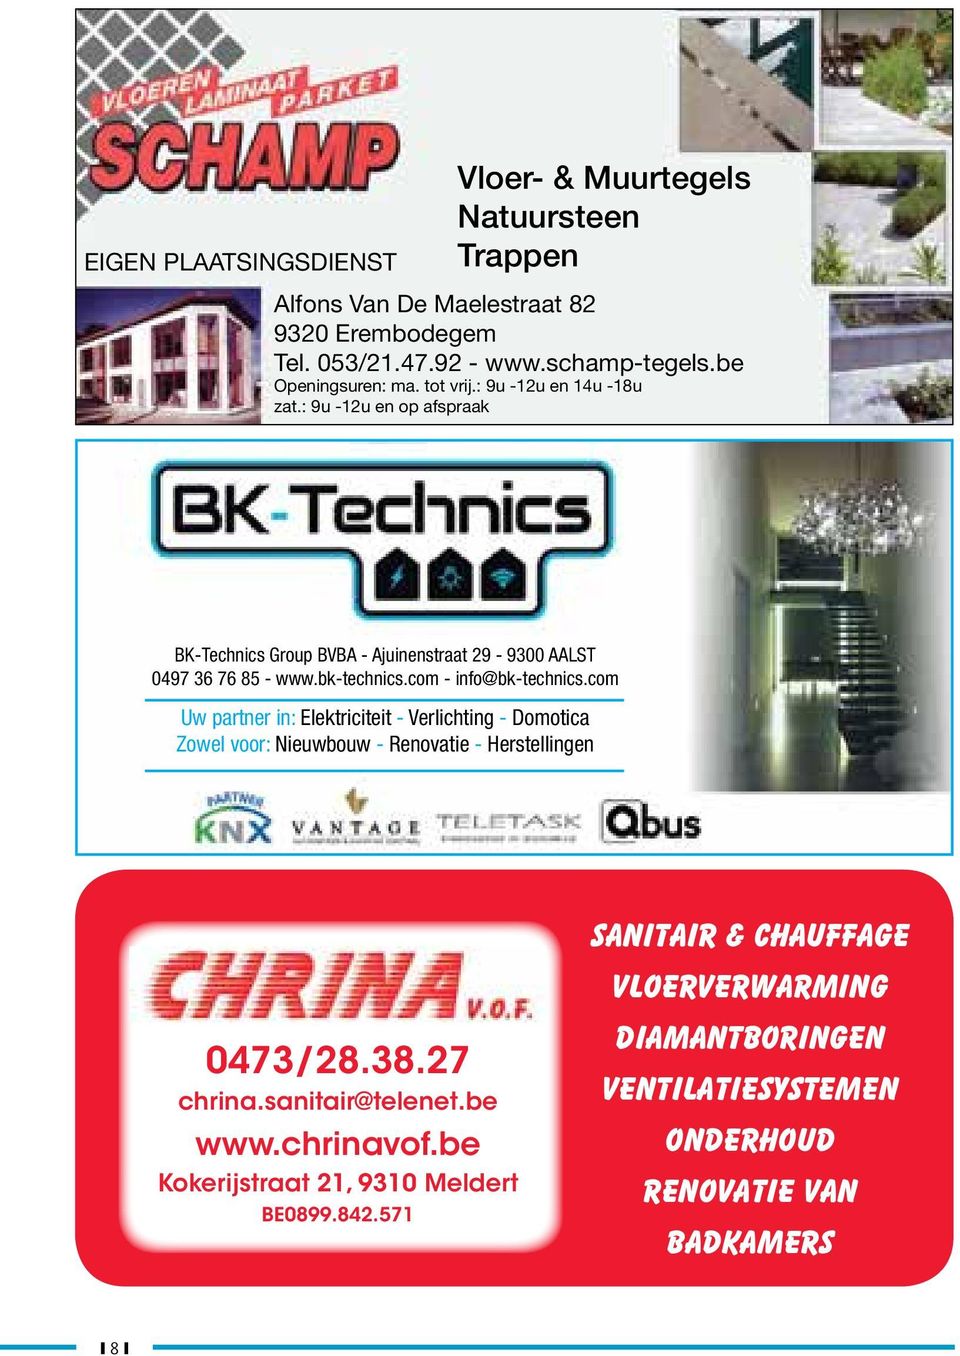 bk-technics.com - info@bk-technics.com Uw partner in: Elektriciteit - Verlichting - Domotica Zowel voor: Nieuwbouw - Renovatie - Herstellingen 0473/28.38.27 chrina.